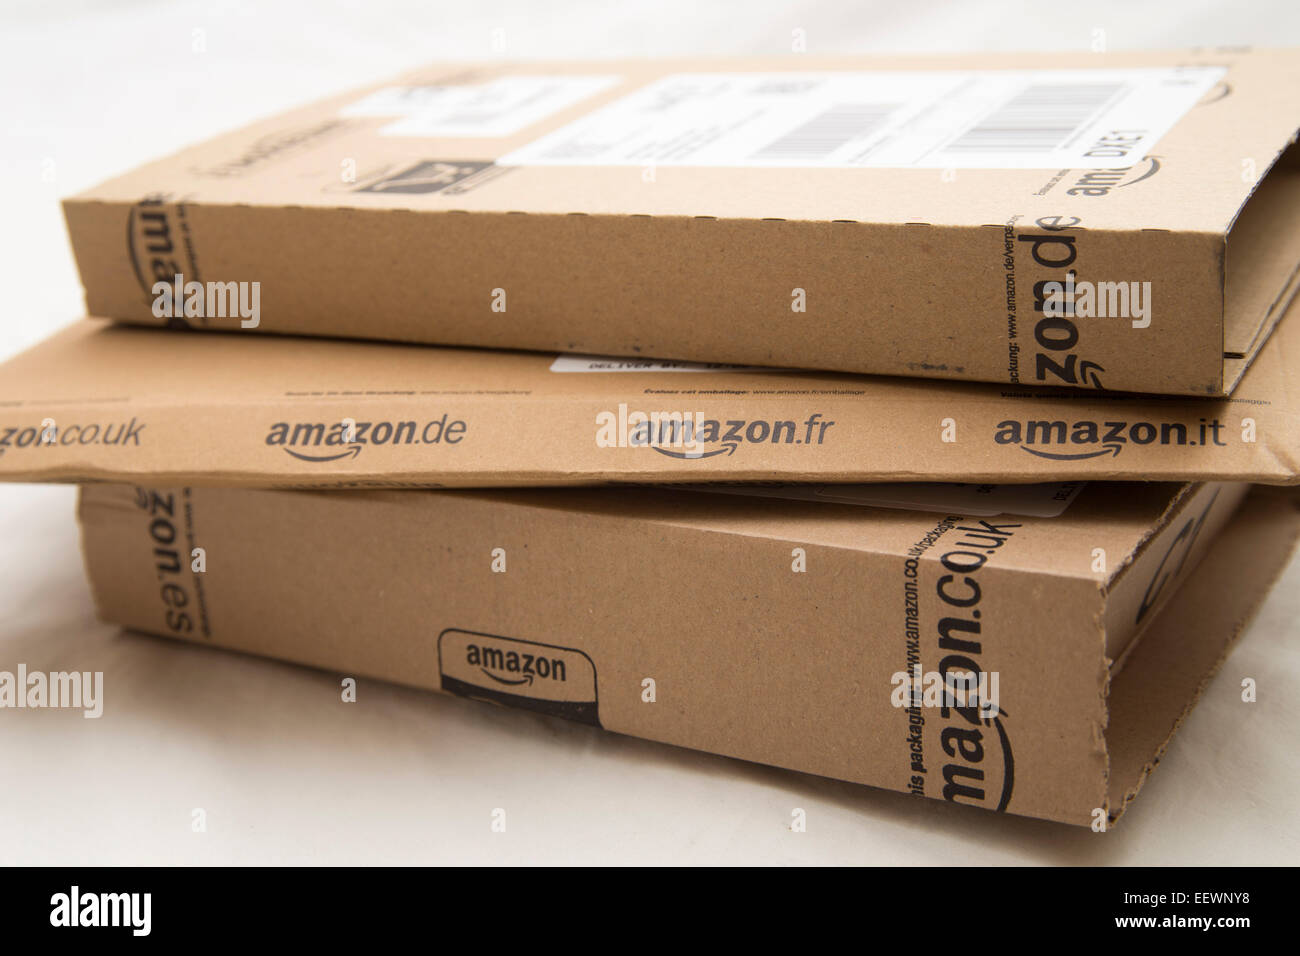 Amazon Pakete, Pakete, post, Online-shopping Stockfotografie - Alamy